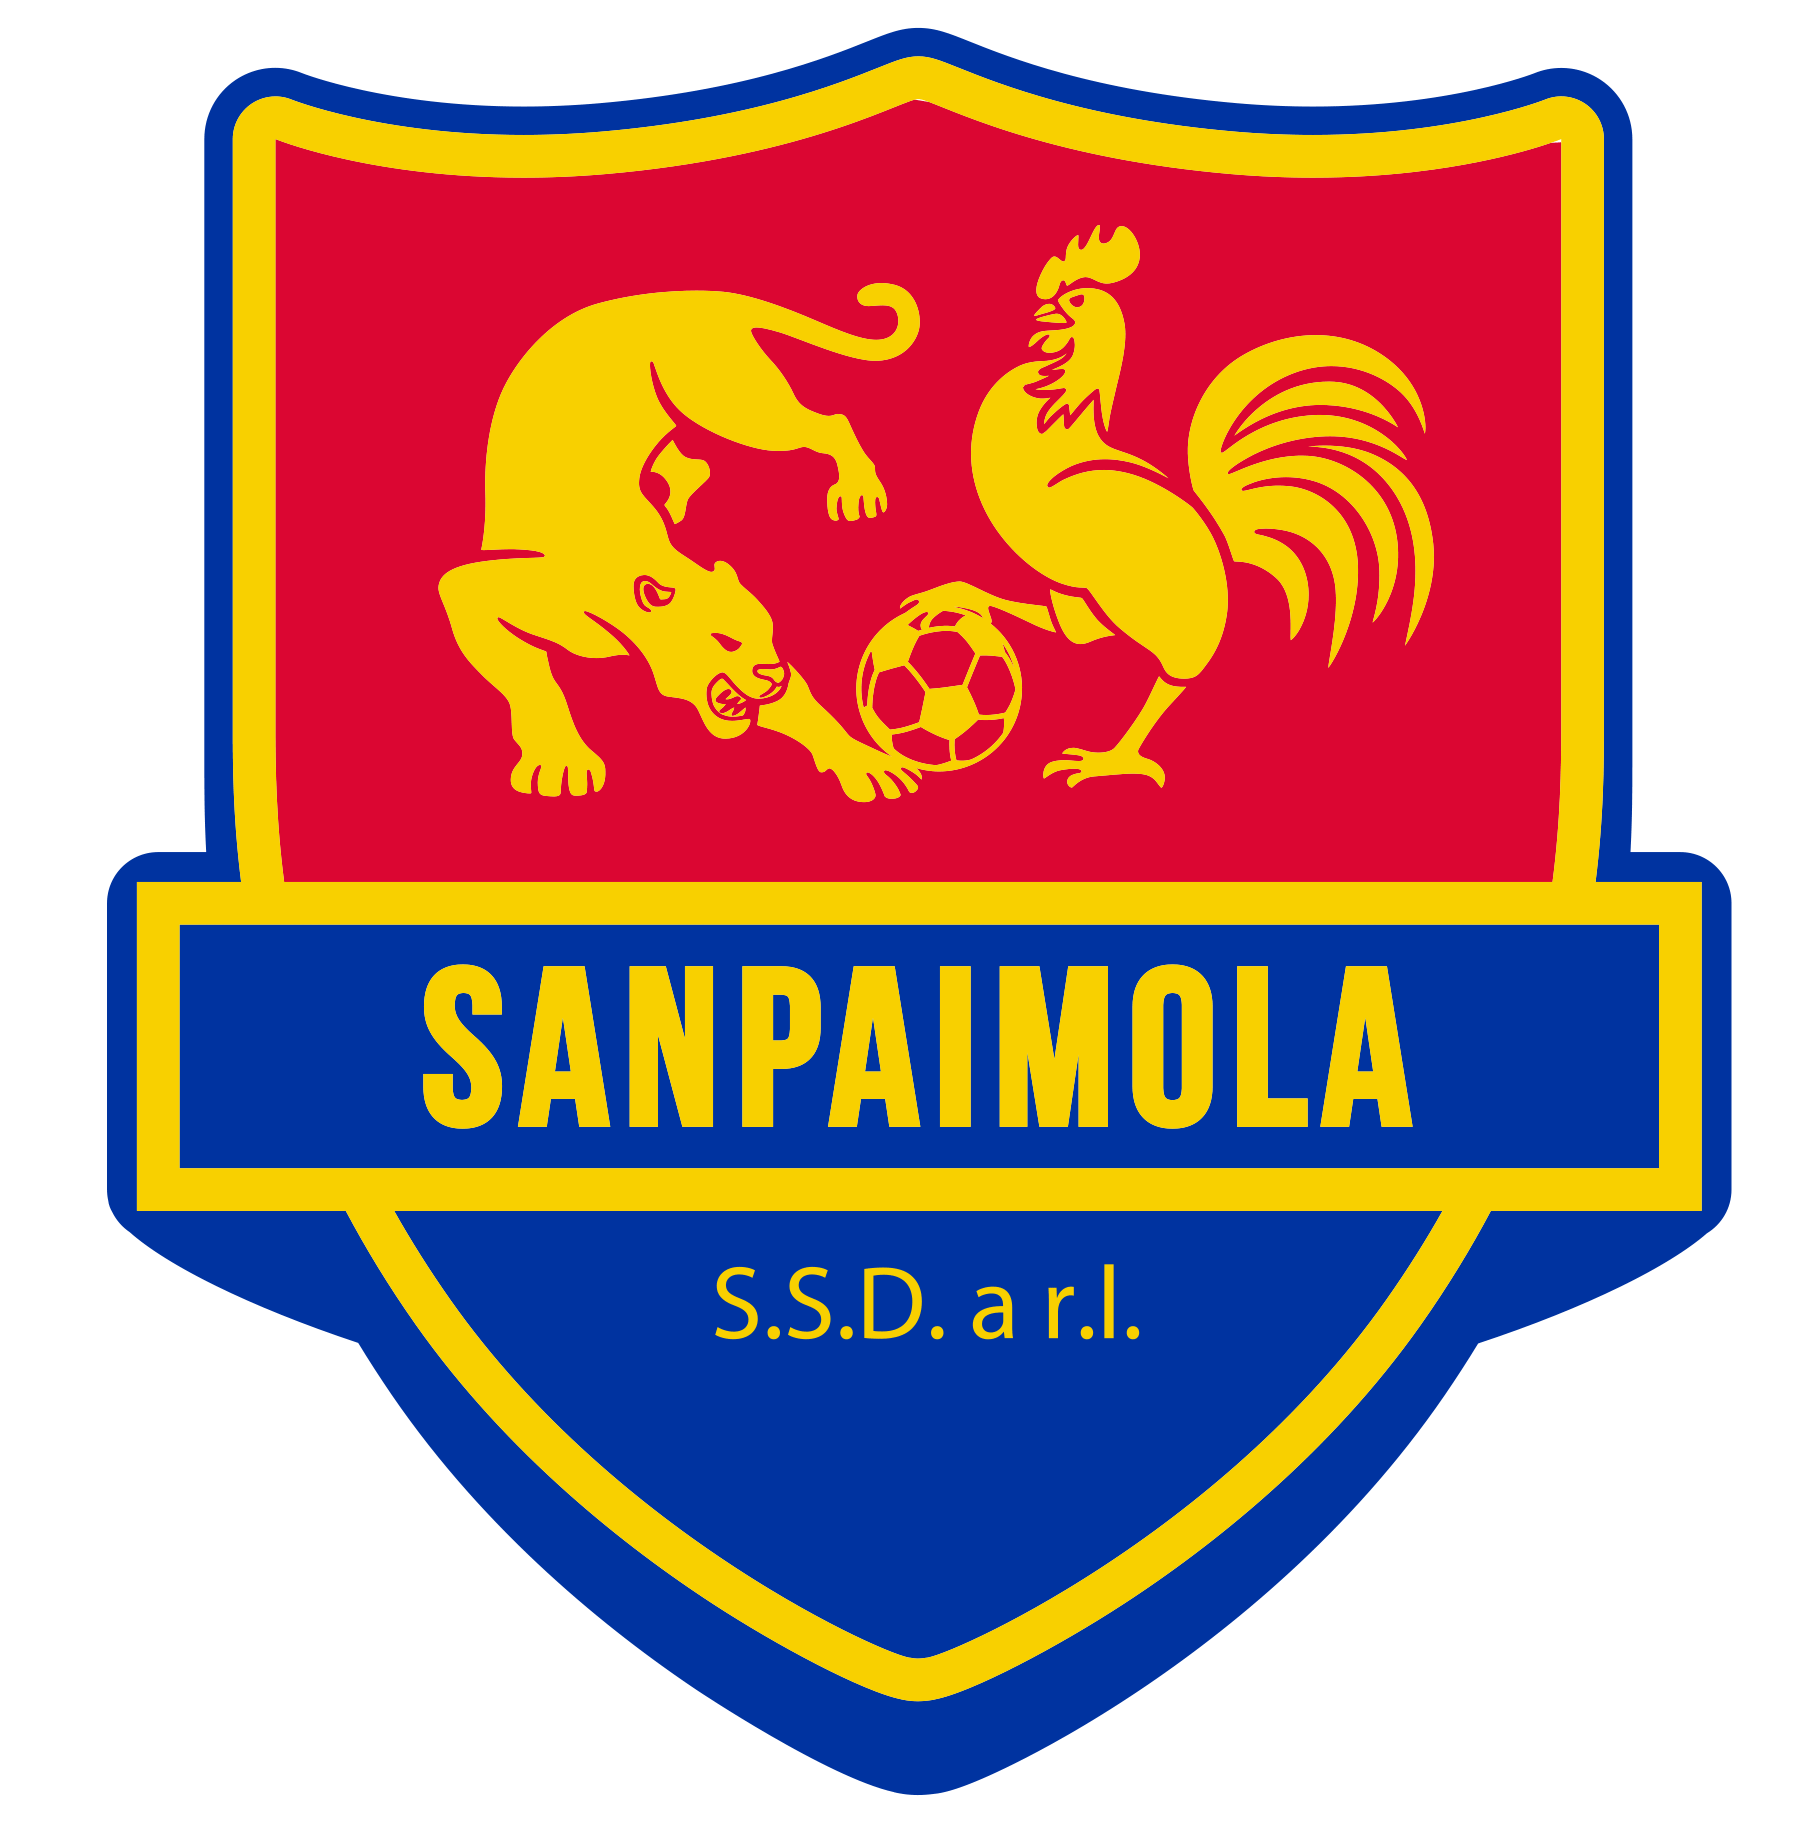 SANPAIMOLA